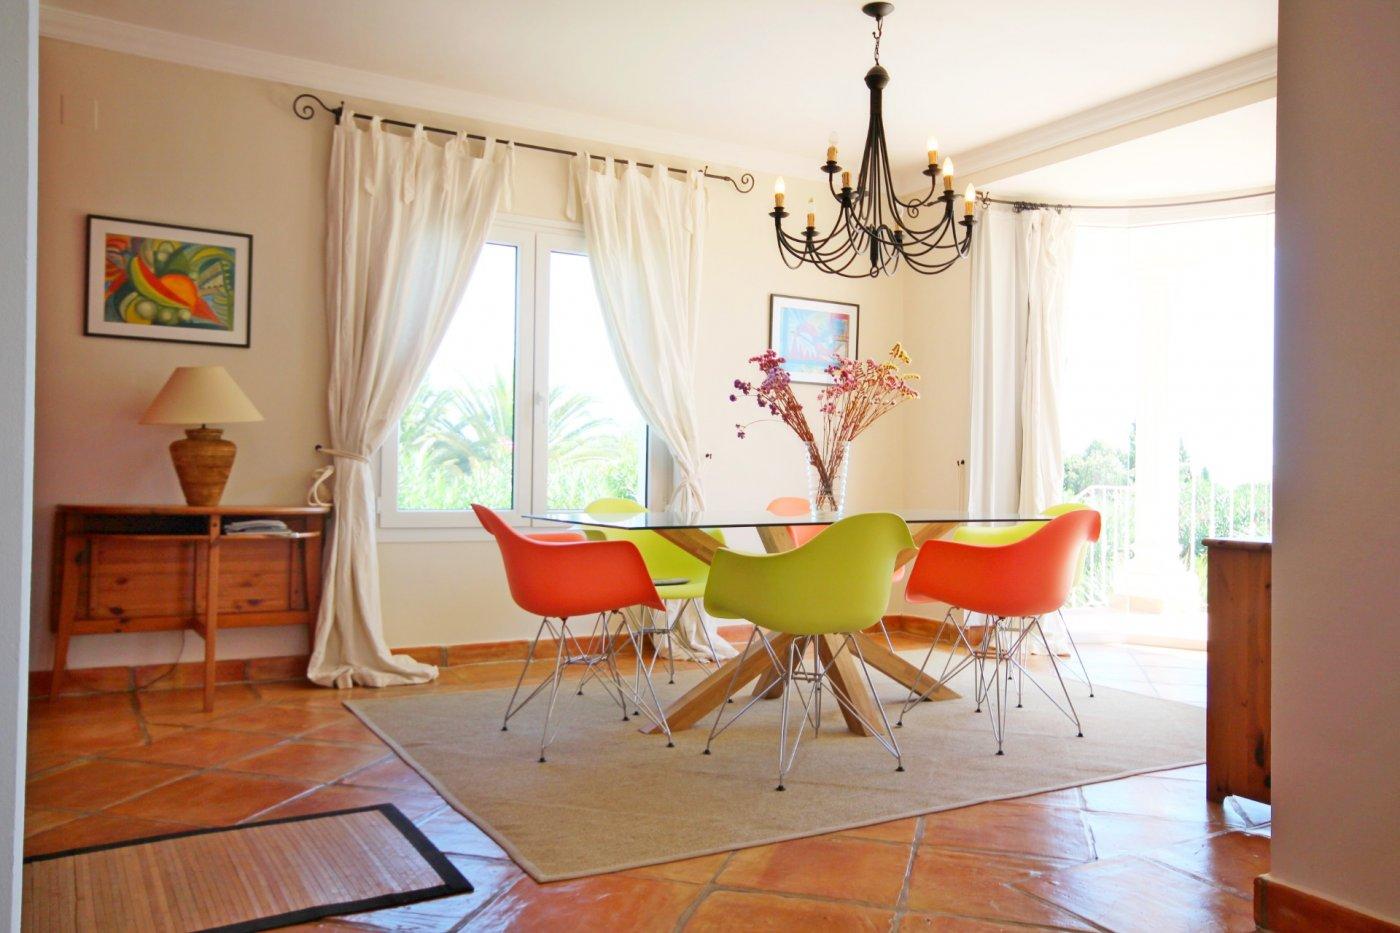 Mediterranean style luxury villa in Moraira